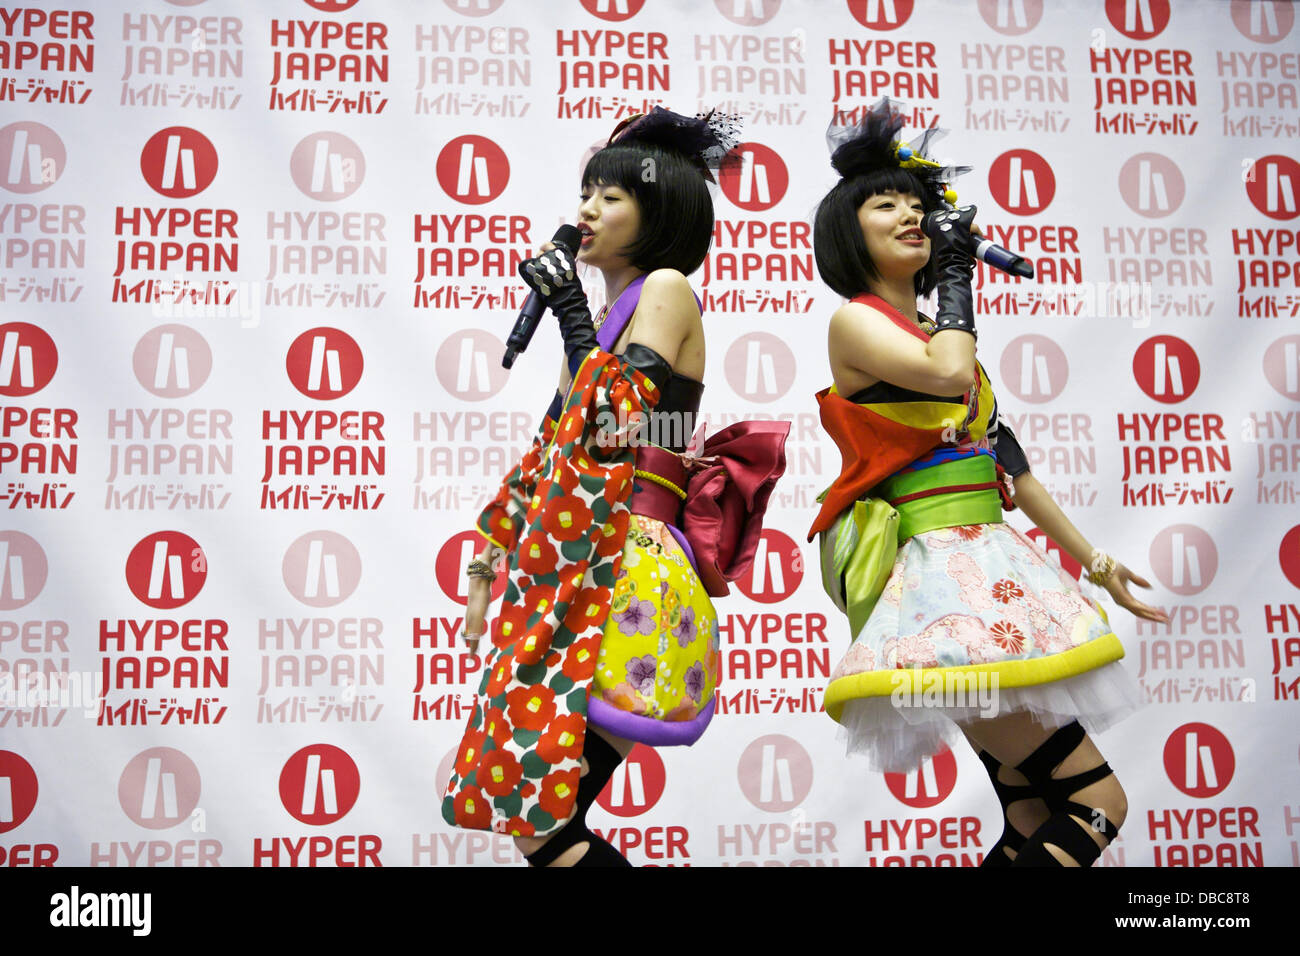 Earls Court, London UK. 27. Juli 2013. Yanakiku, die japanische Popkultur vertreten, führen Sie live auf der Bühne Hyper Japan. Bildnachweis: Tony Farrugia/Alamy Live-Nachrichten Stockfoto